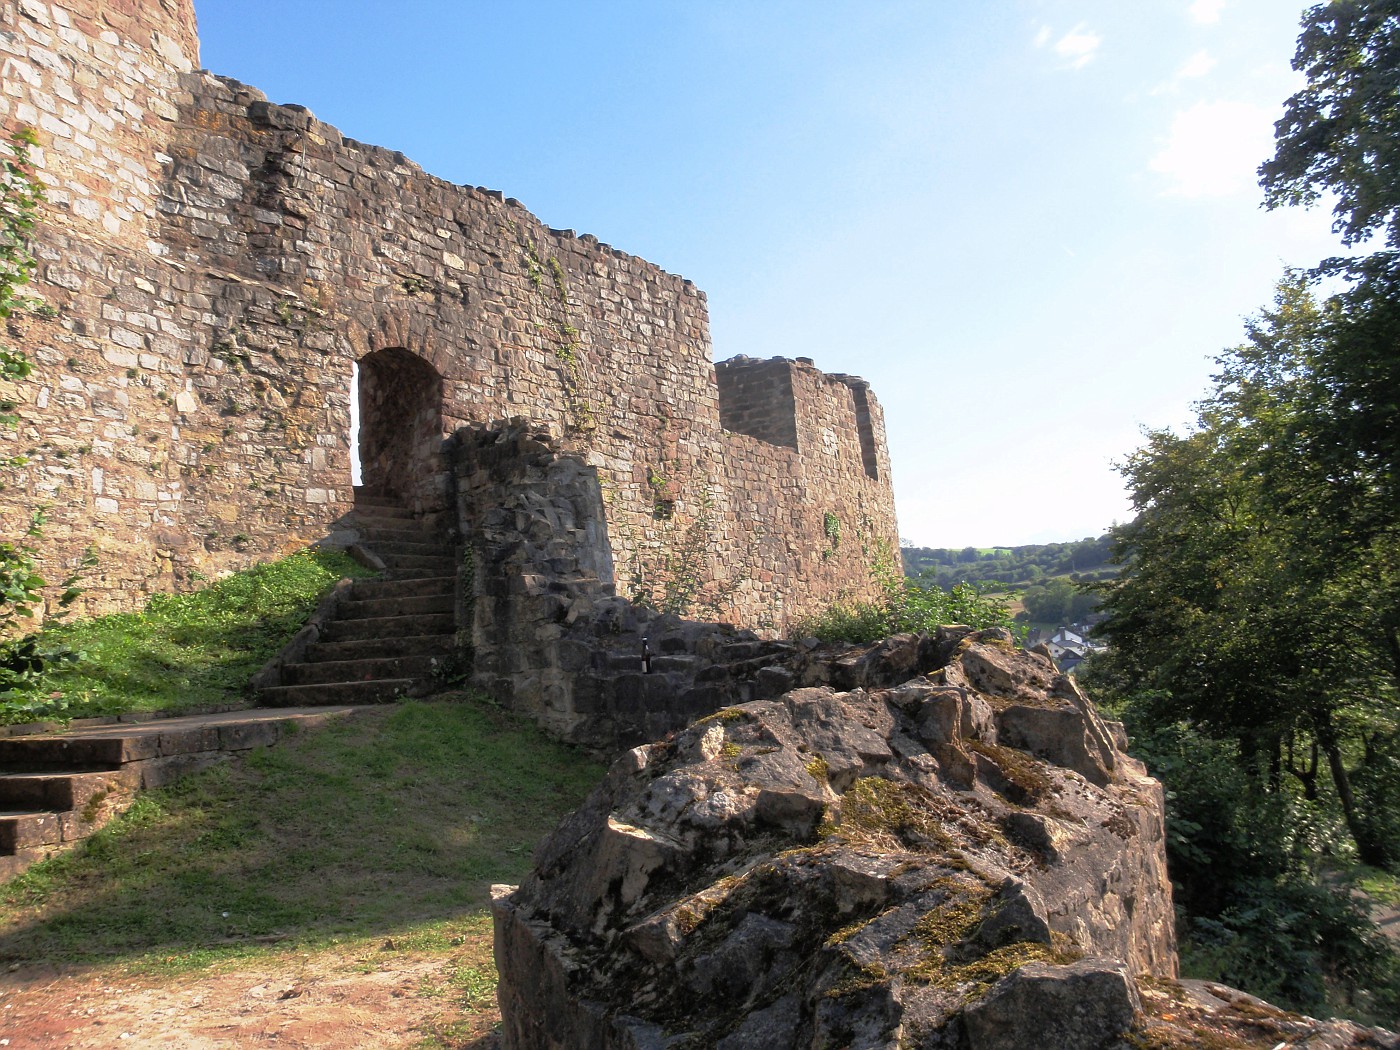 Ruine der Eversteiner Burg